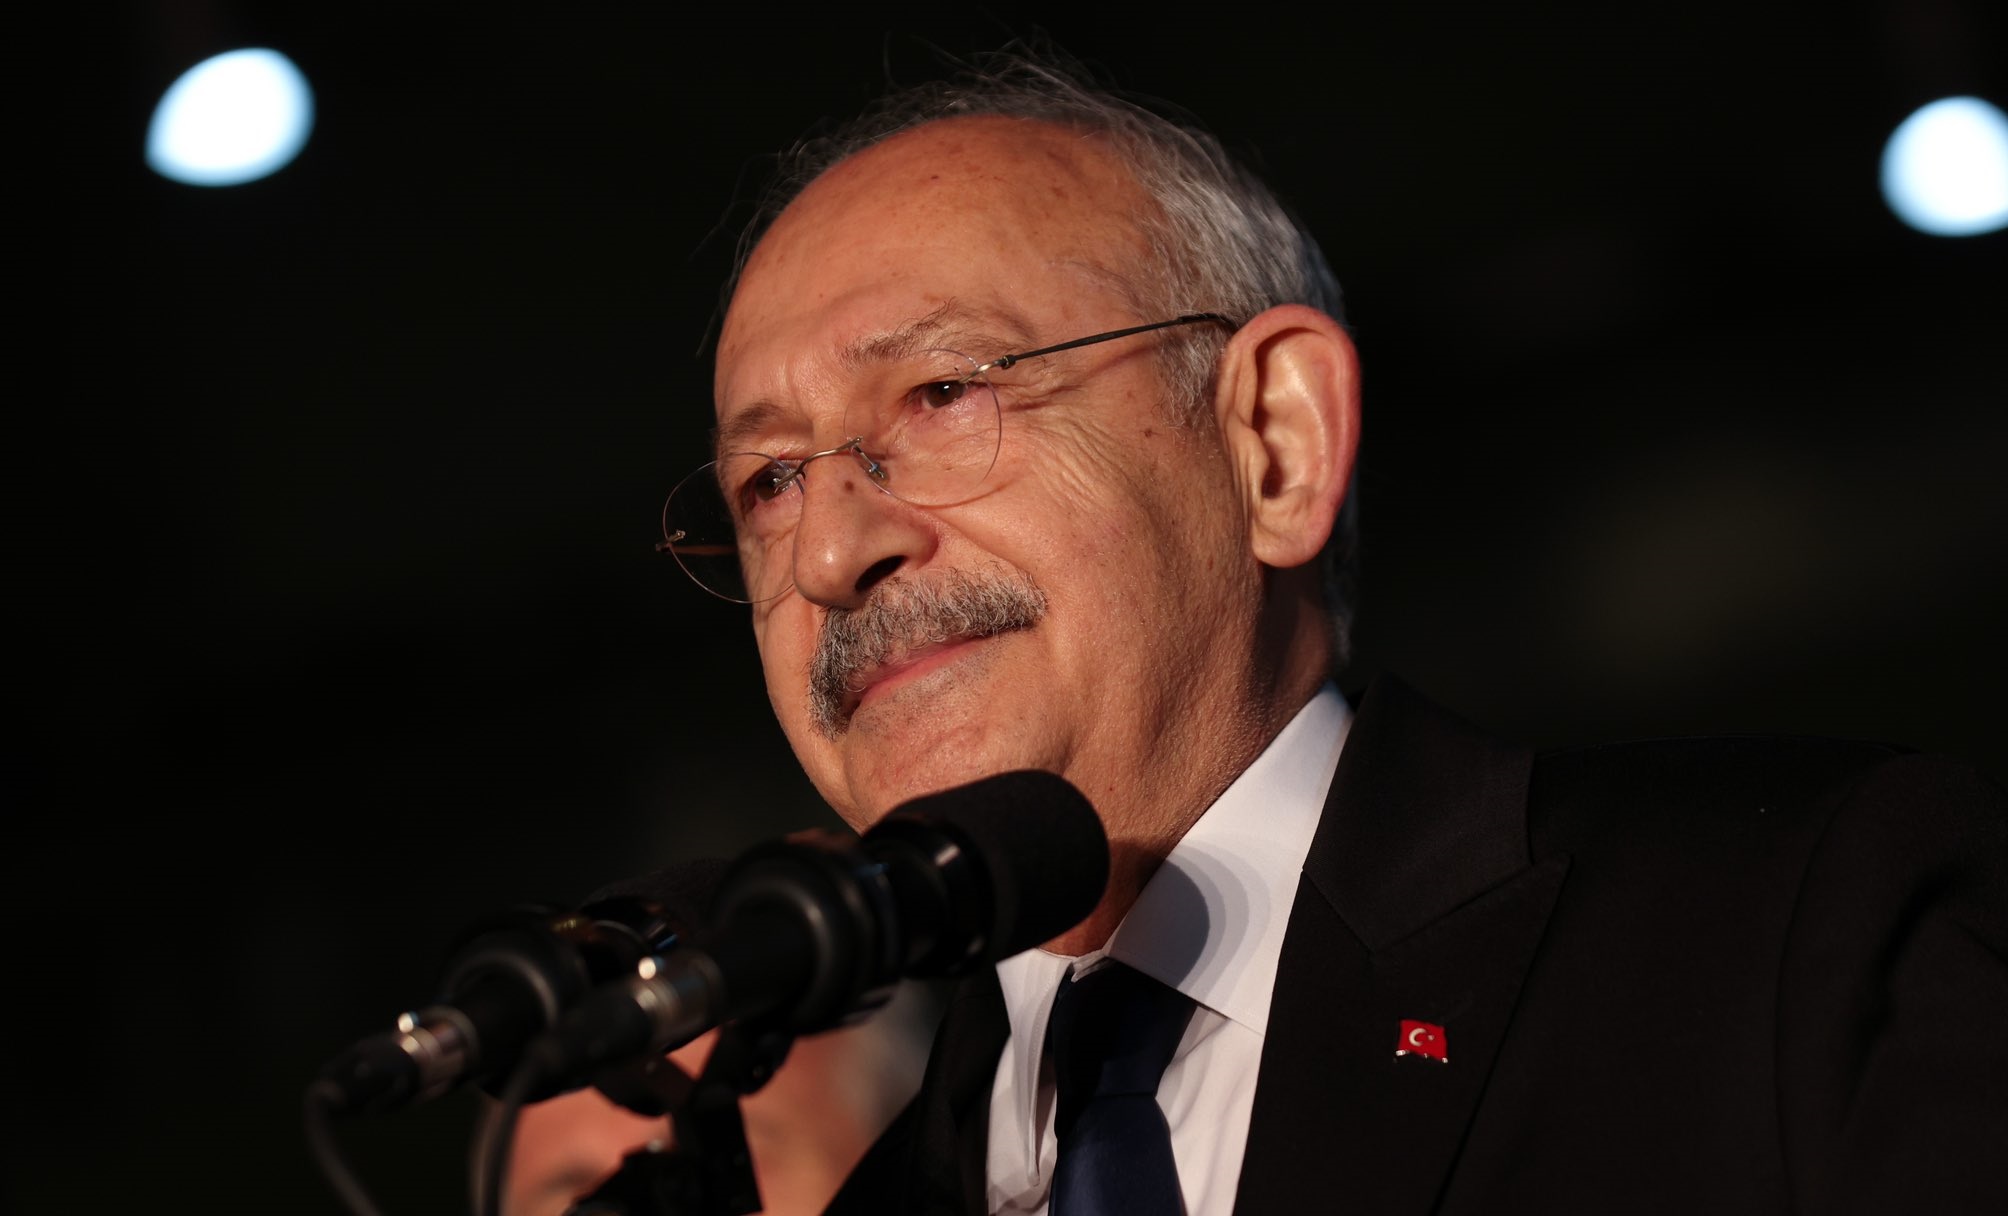 Millet İttifakının Ortak Cumhurbaşkanı adayı Kılıçdaroğlu